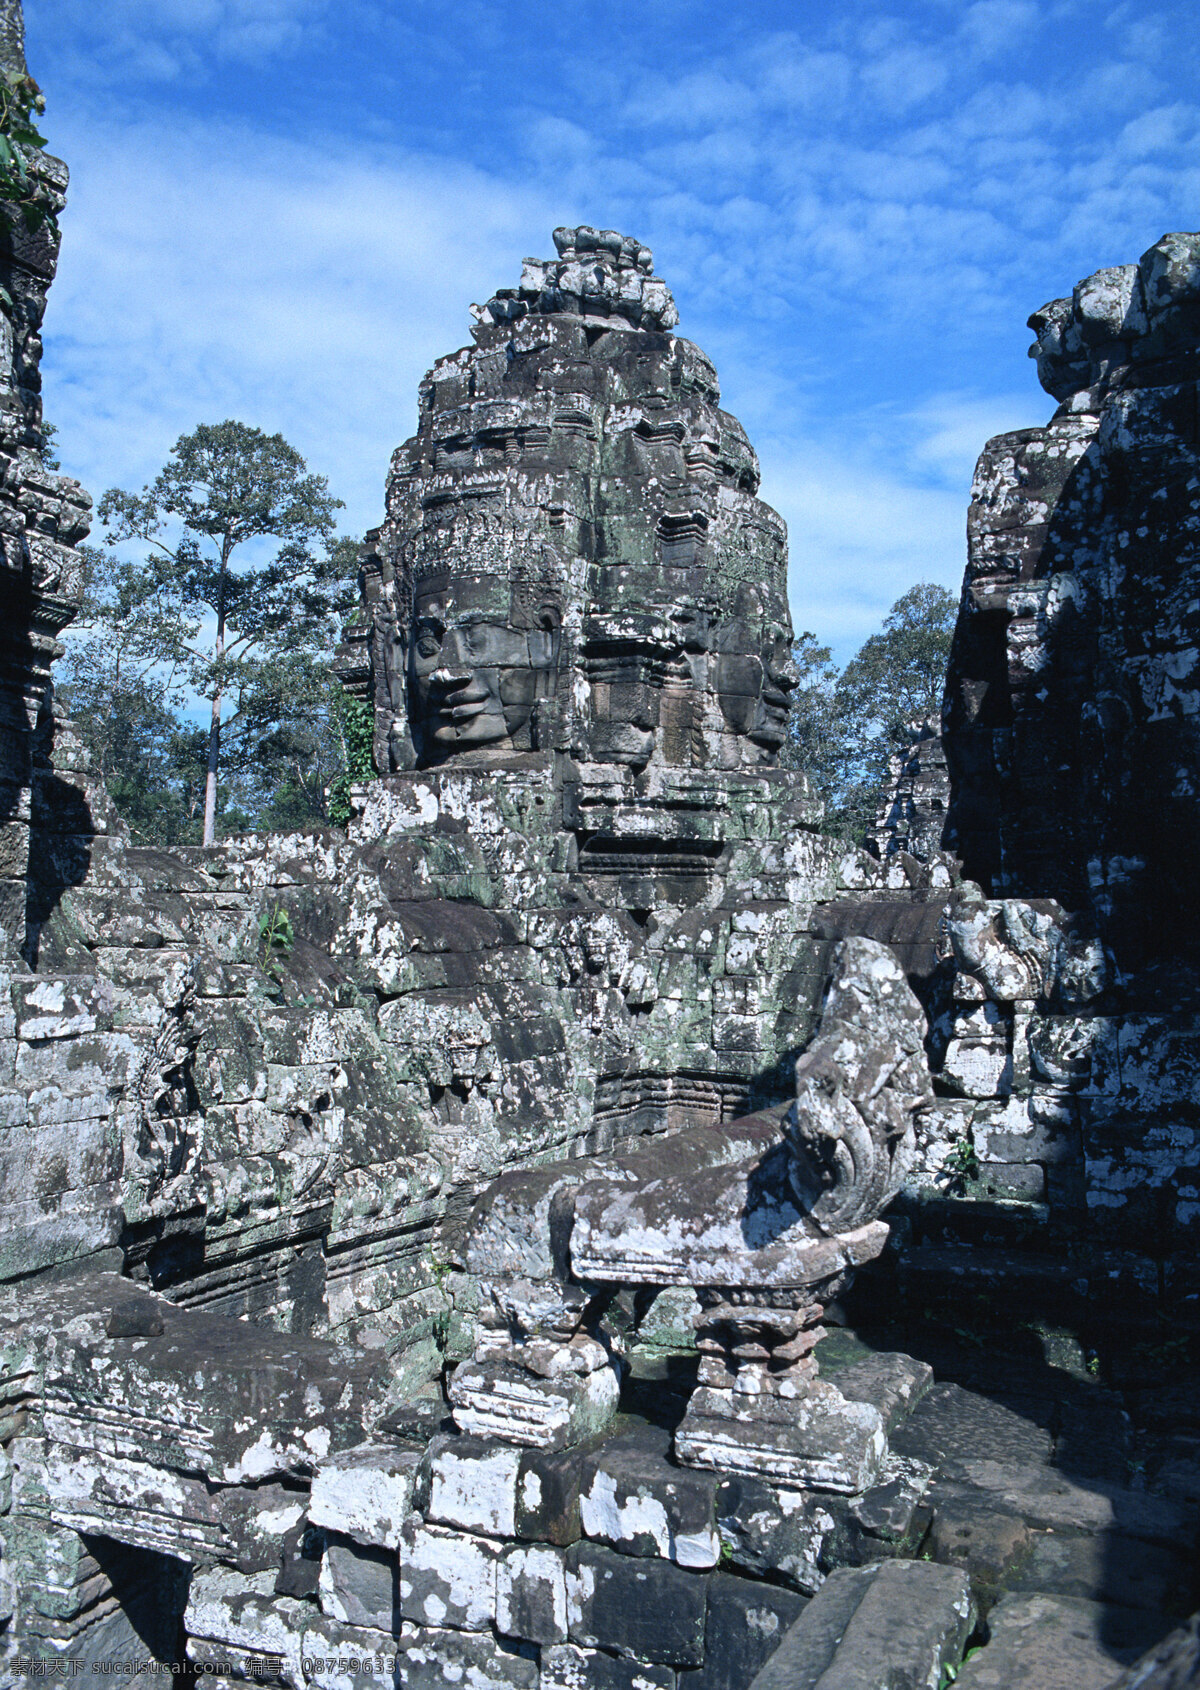 吴哥窟 石雕 柬埔寨 石雕像 柬埔寨建筑 柬埔寨风光 南亚风情 特色建筑 世界 历史文化 遗产 国外旅游 旅游摄影